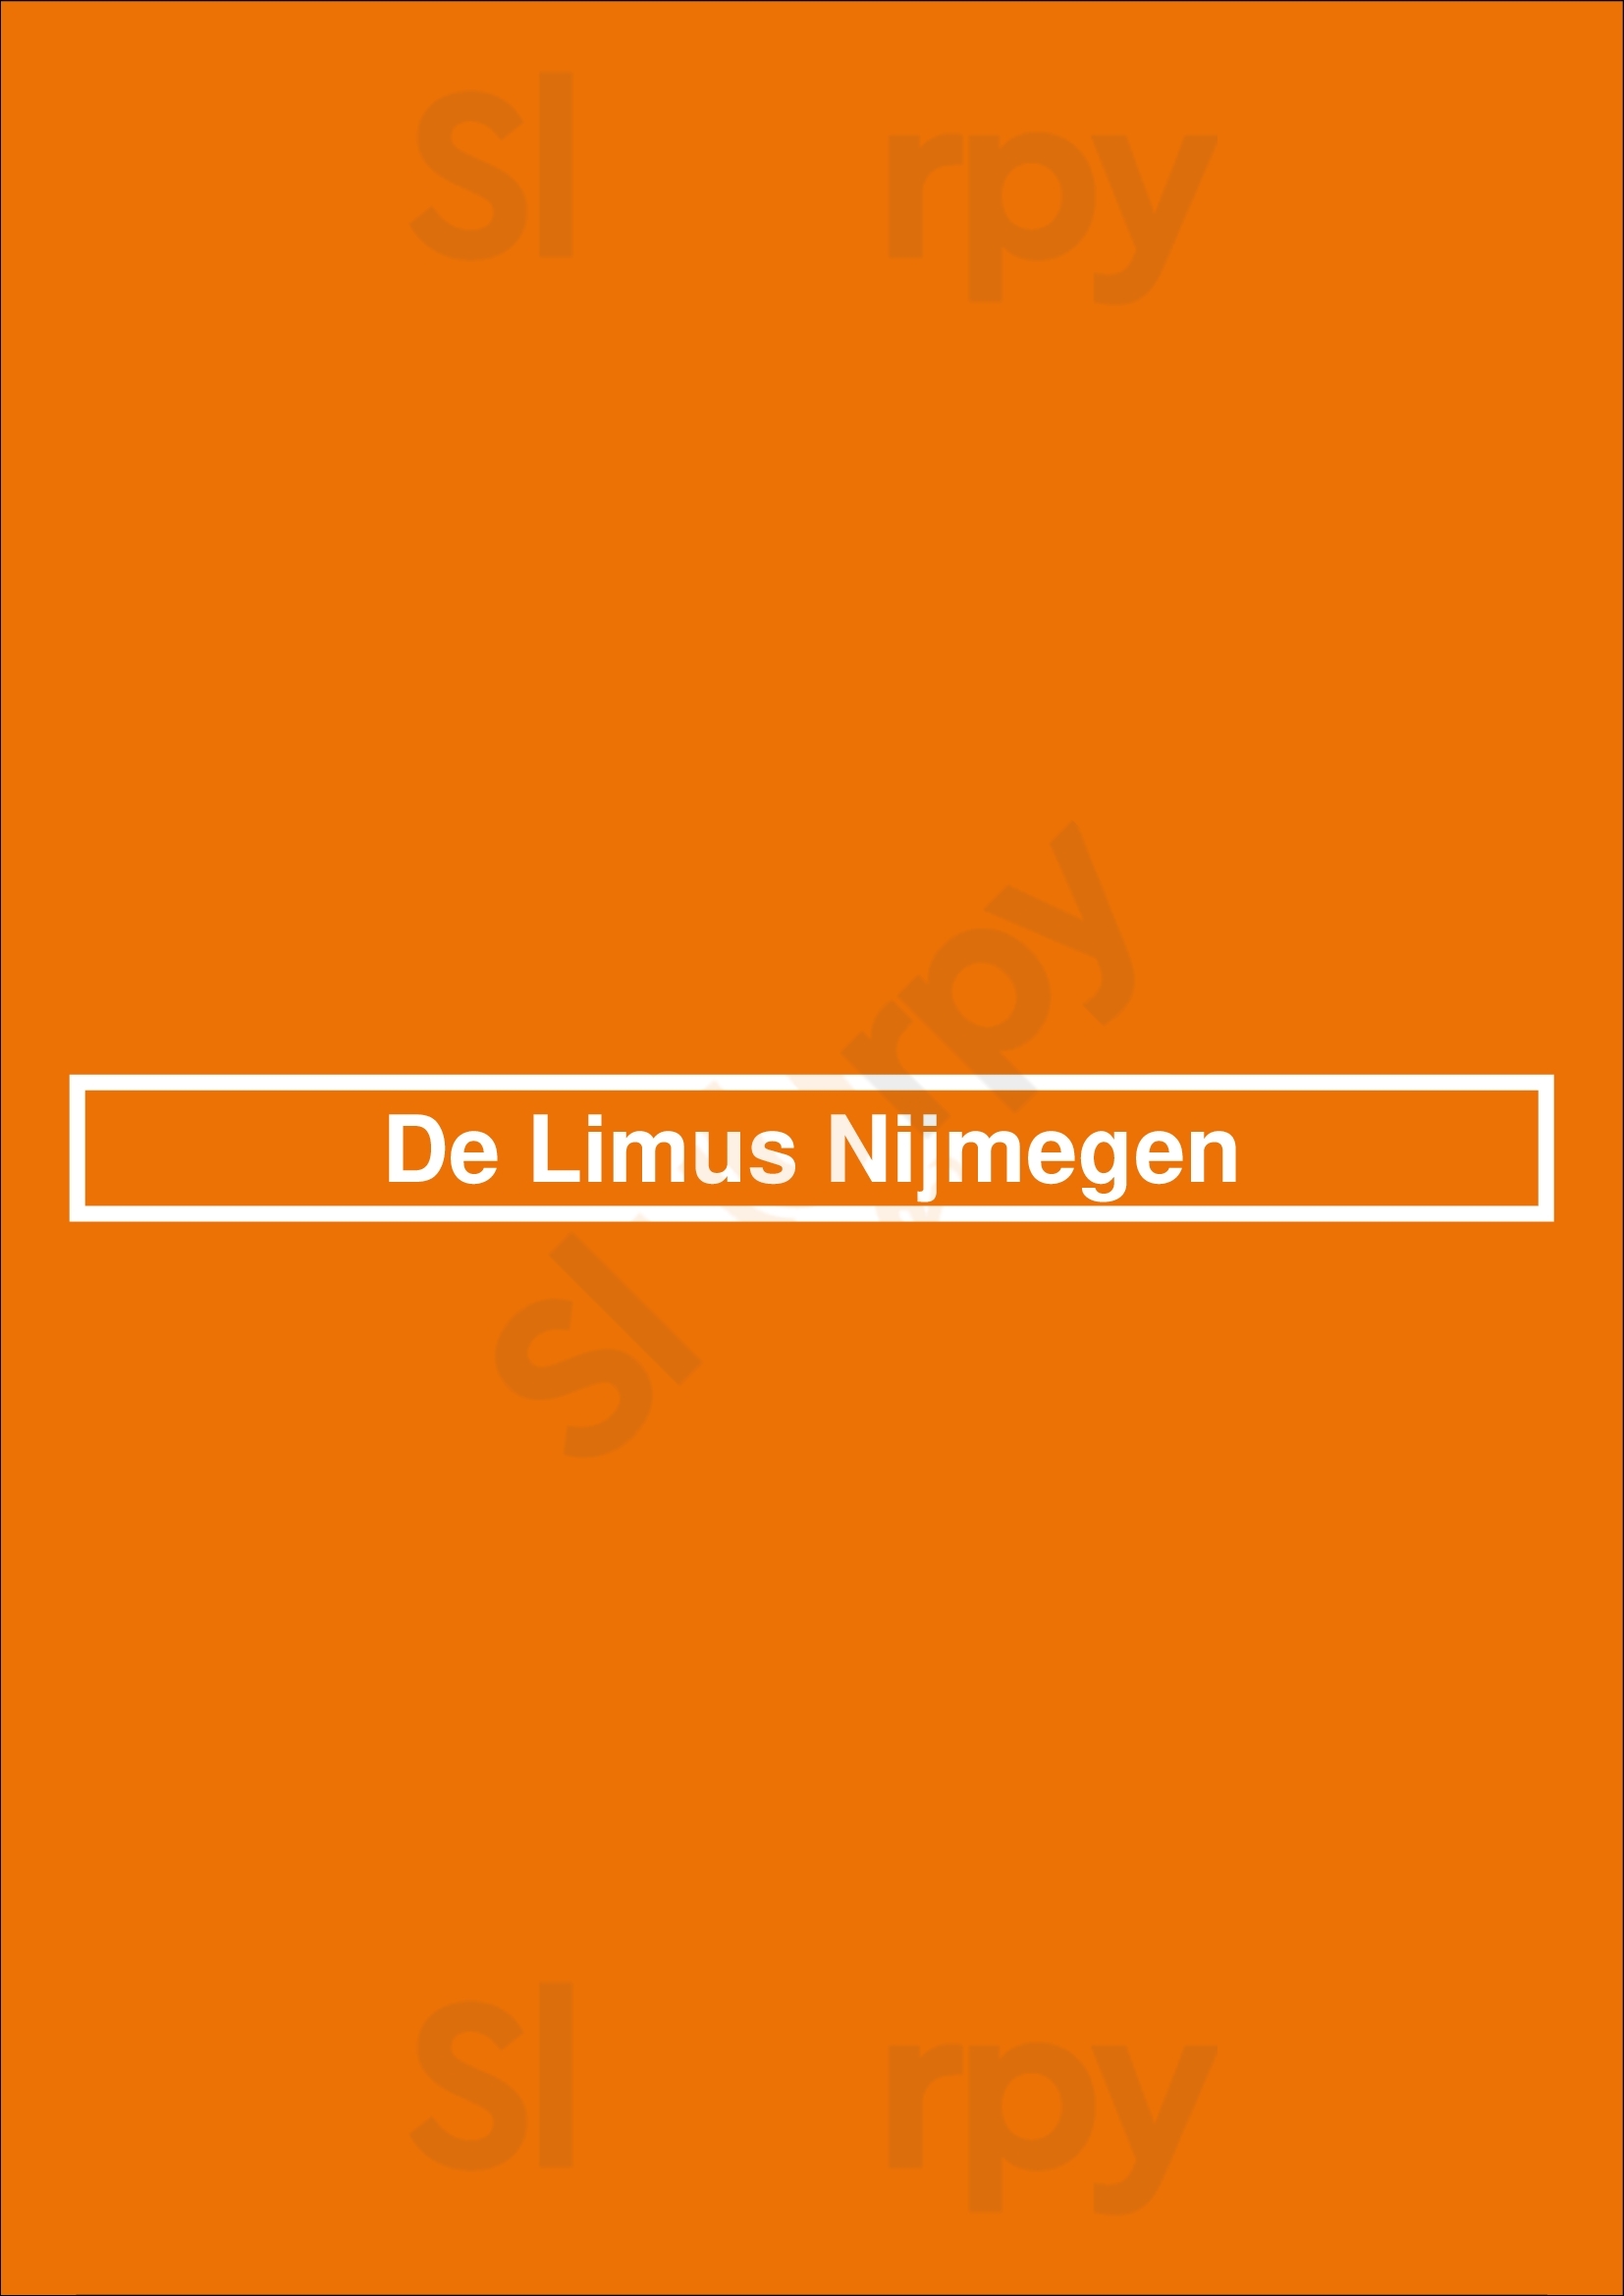 De Limus Nijmegen Nijmegen Menu - 1